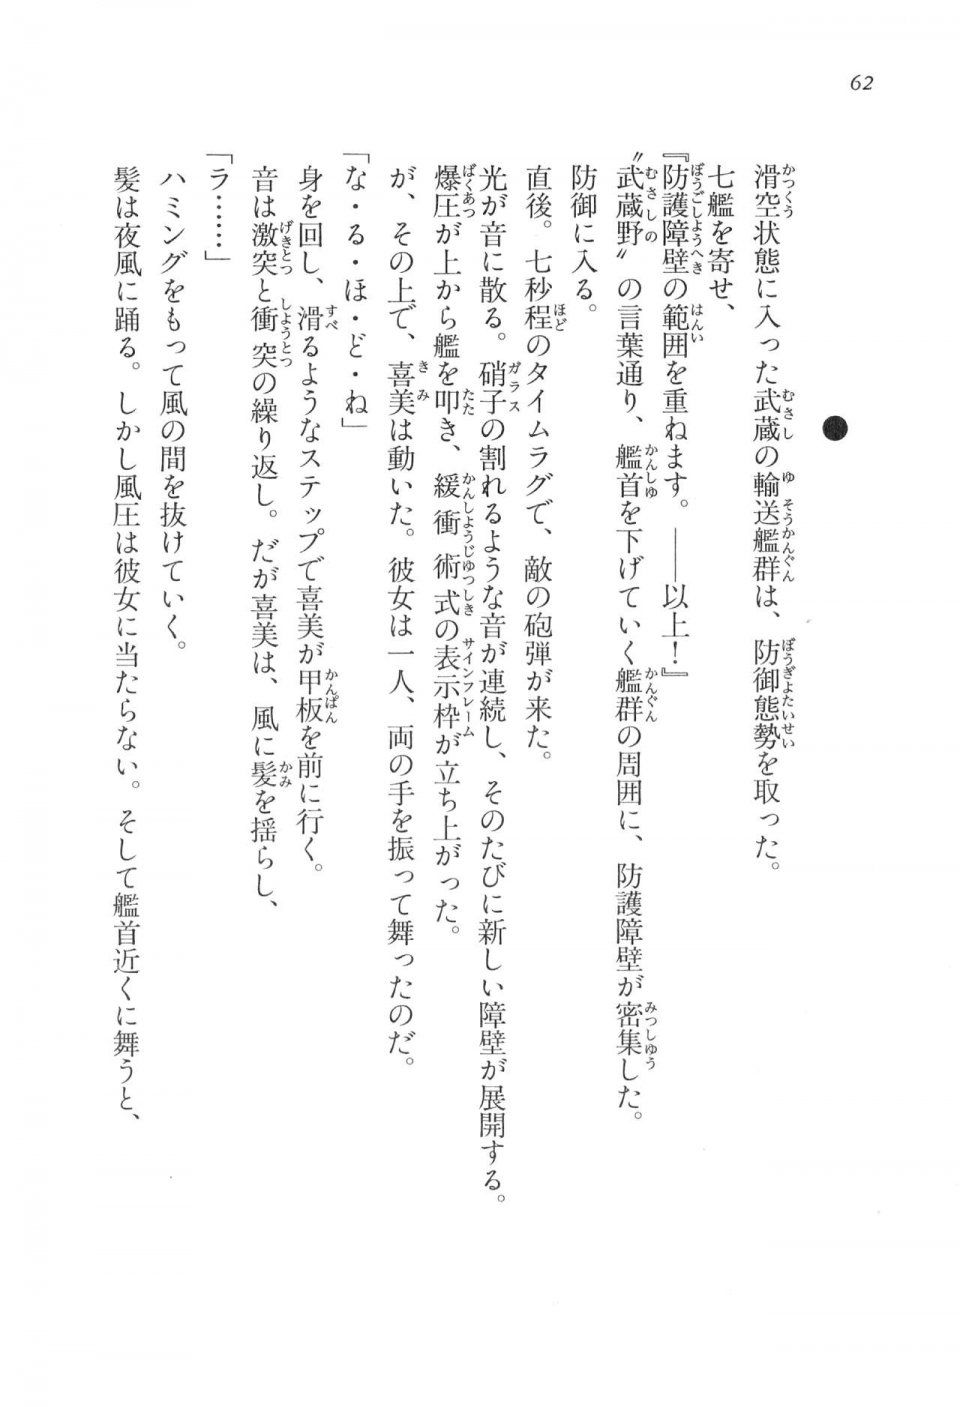 Kyoukai Senjou no Horizon LN Vol 17(7B) - Photo #62